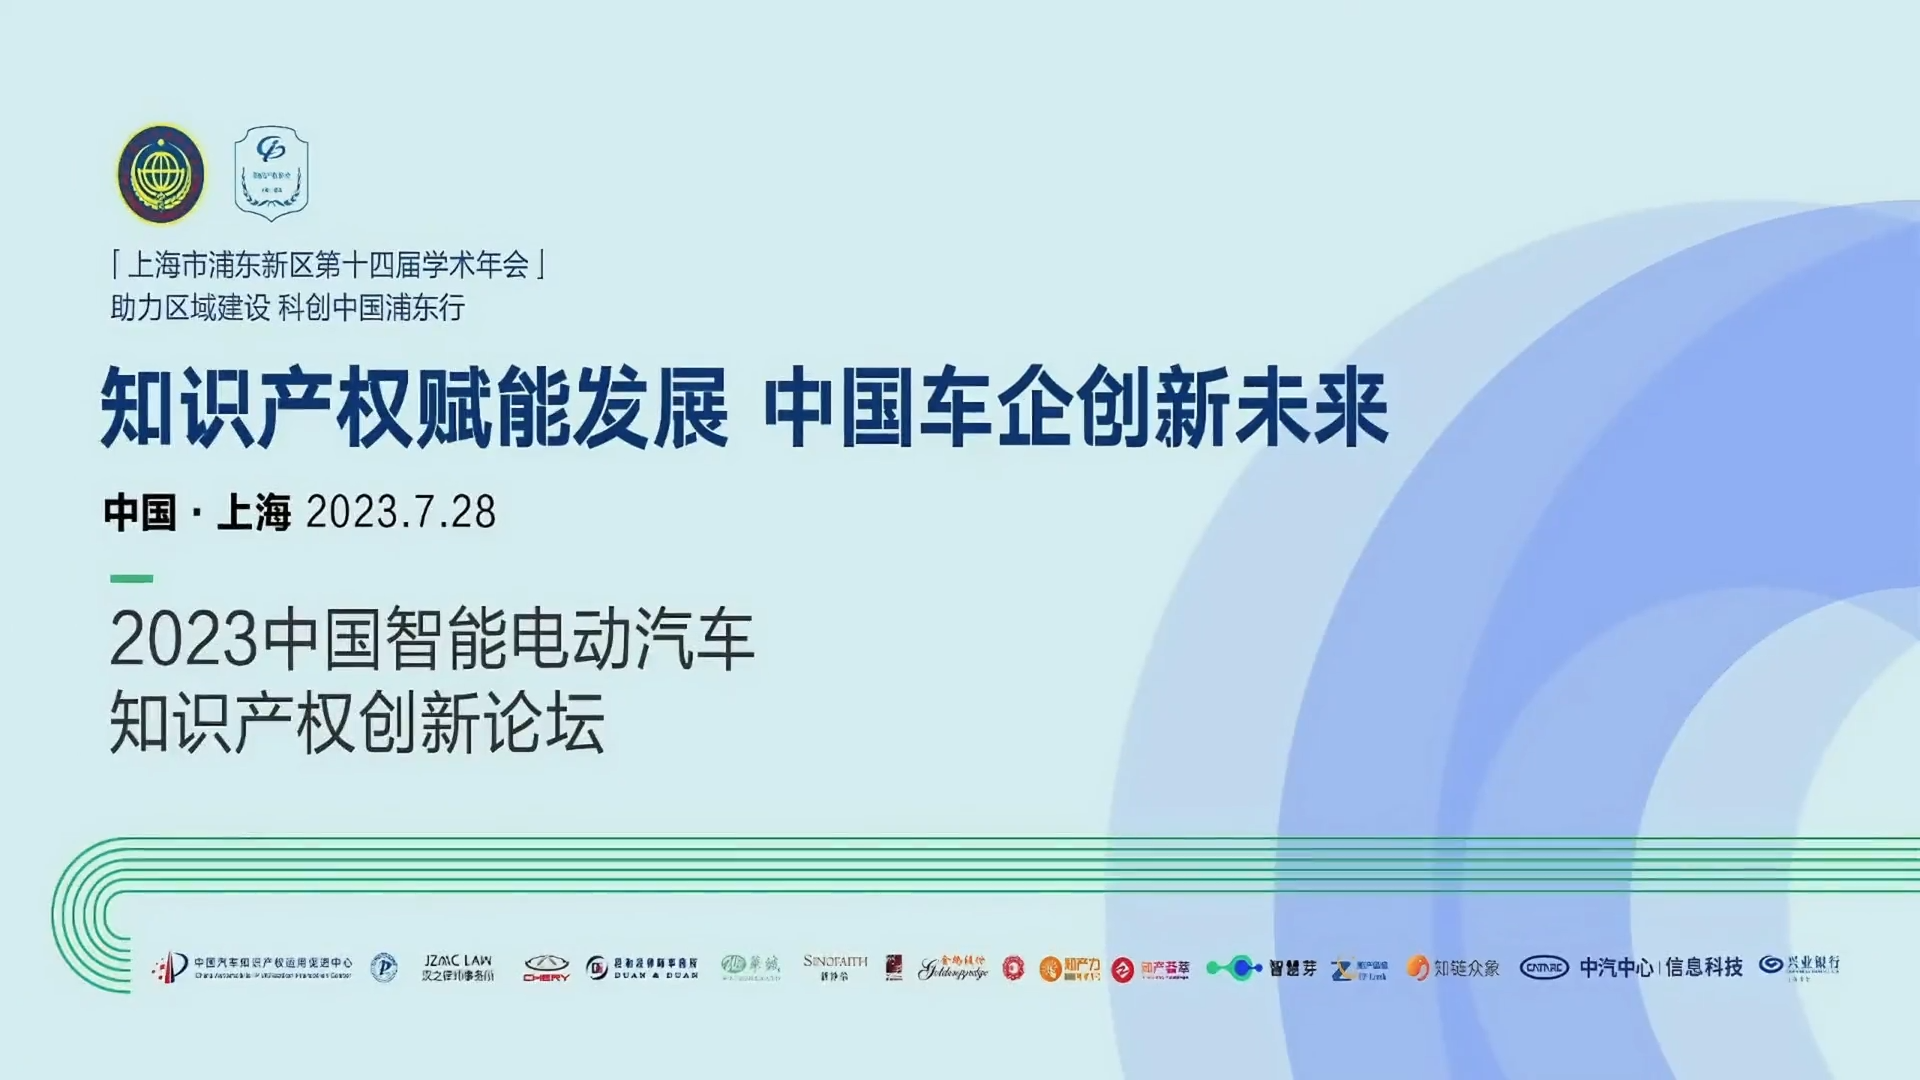 2023中国智能电动汽车知识产权创新论坛